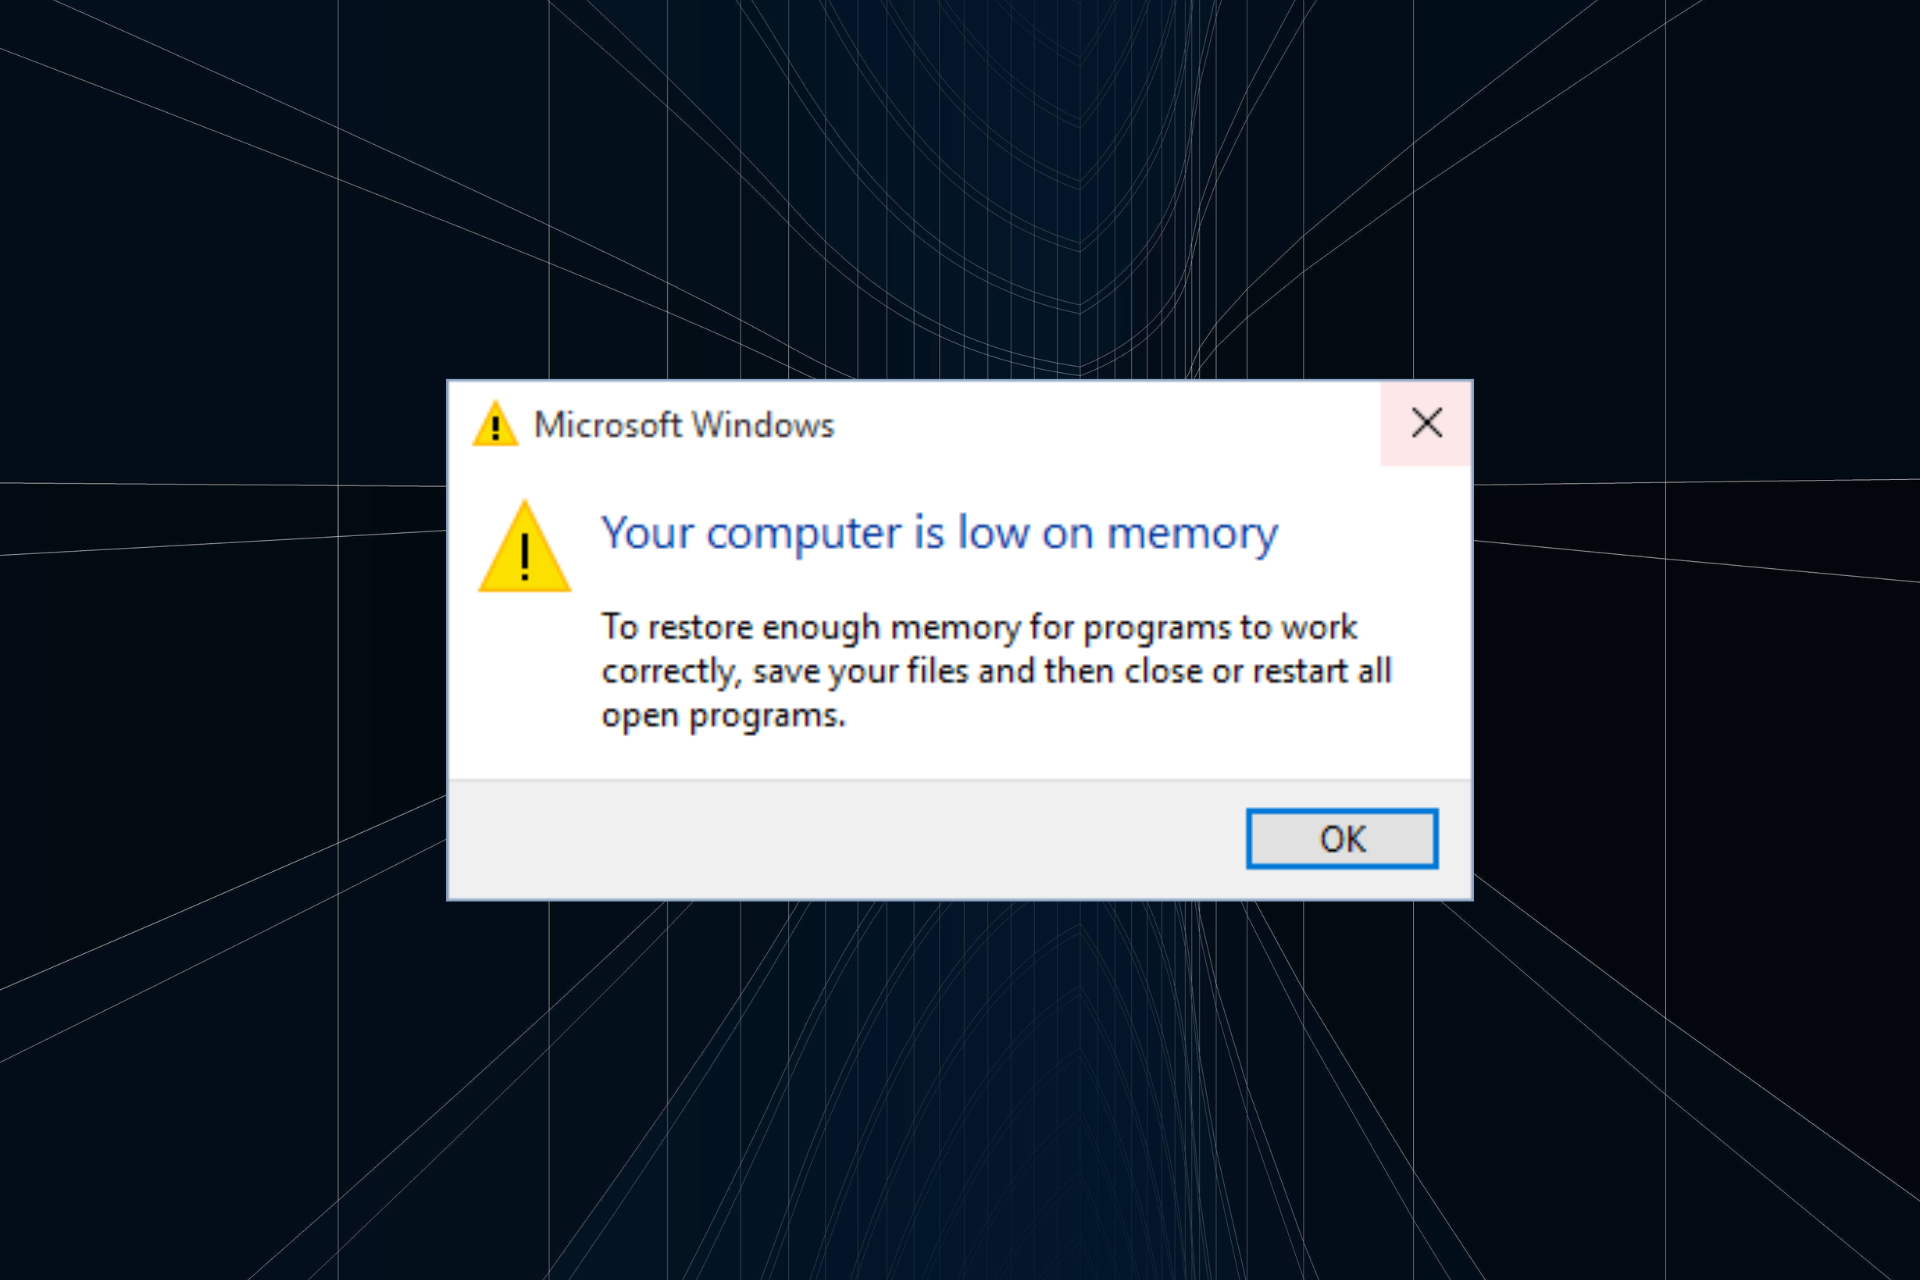 solucione el problema de memoria virtual baja en Windows 10